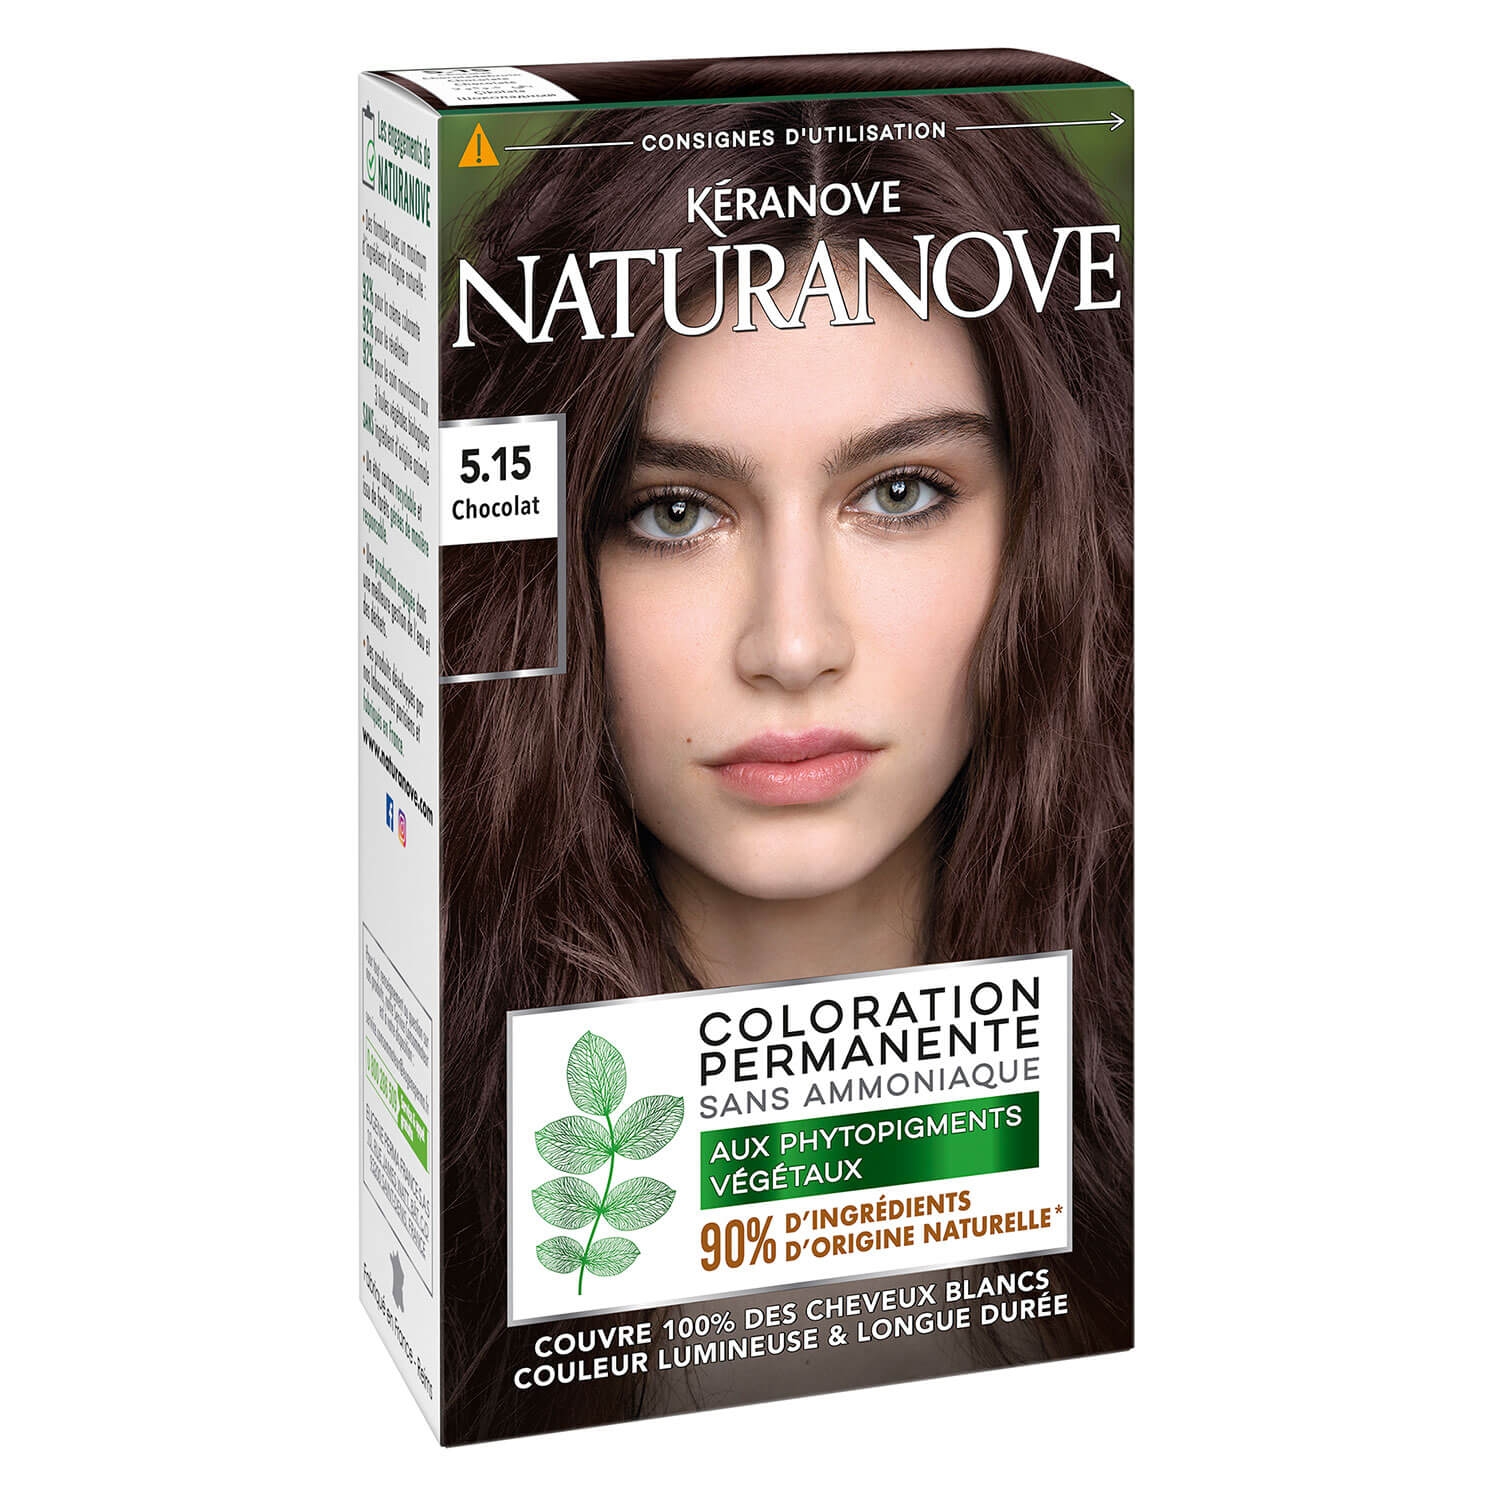 Produktbild von Naturanove - Dauerhafte Haarfarbe Schokolade 5.15